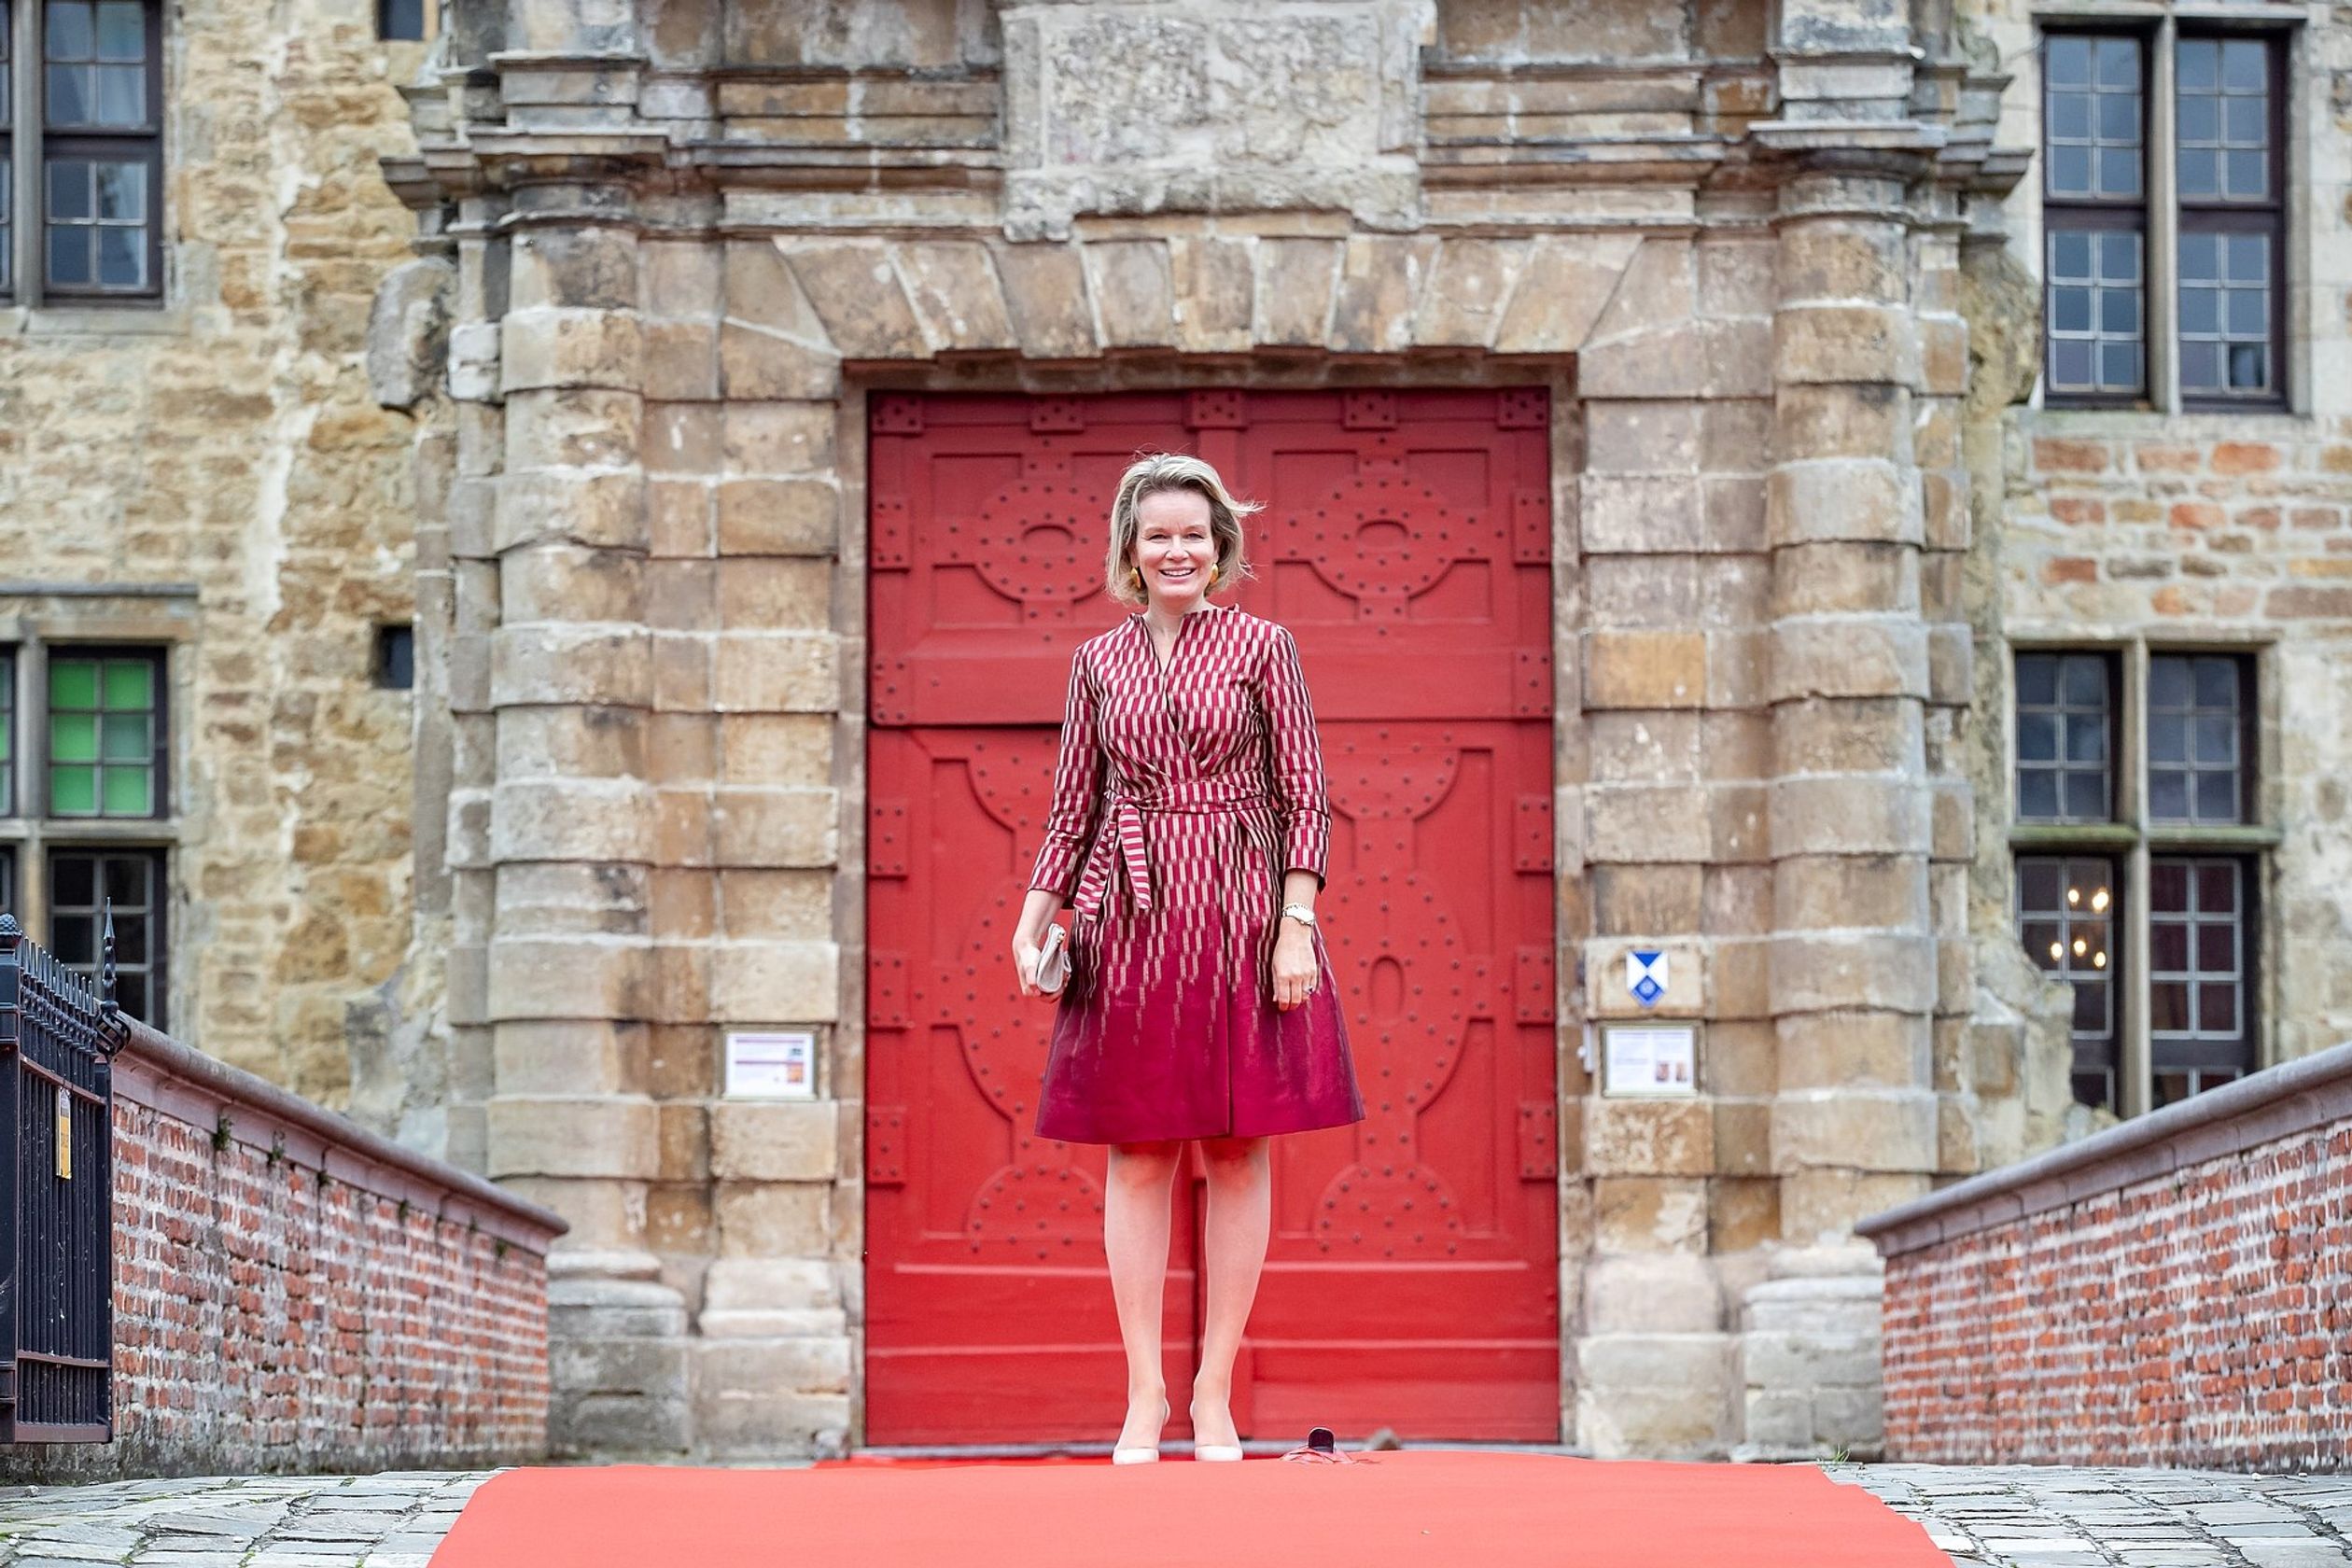 Op 30 september bezoekt koningin Mathilde Kasteel van Laarne, tijdens een koninklijk bezoek aan de